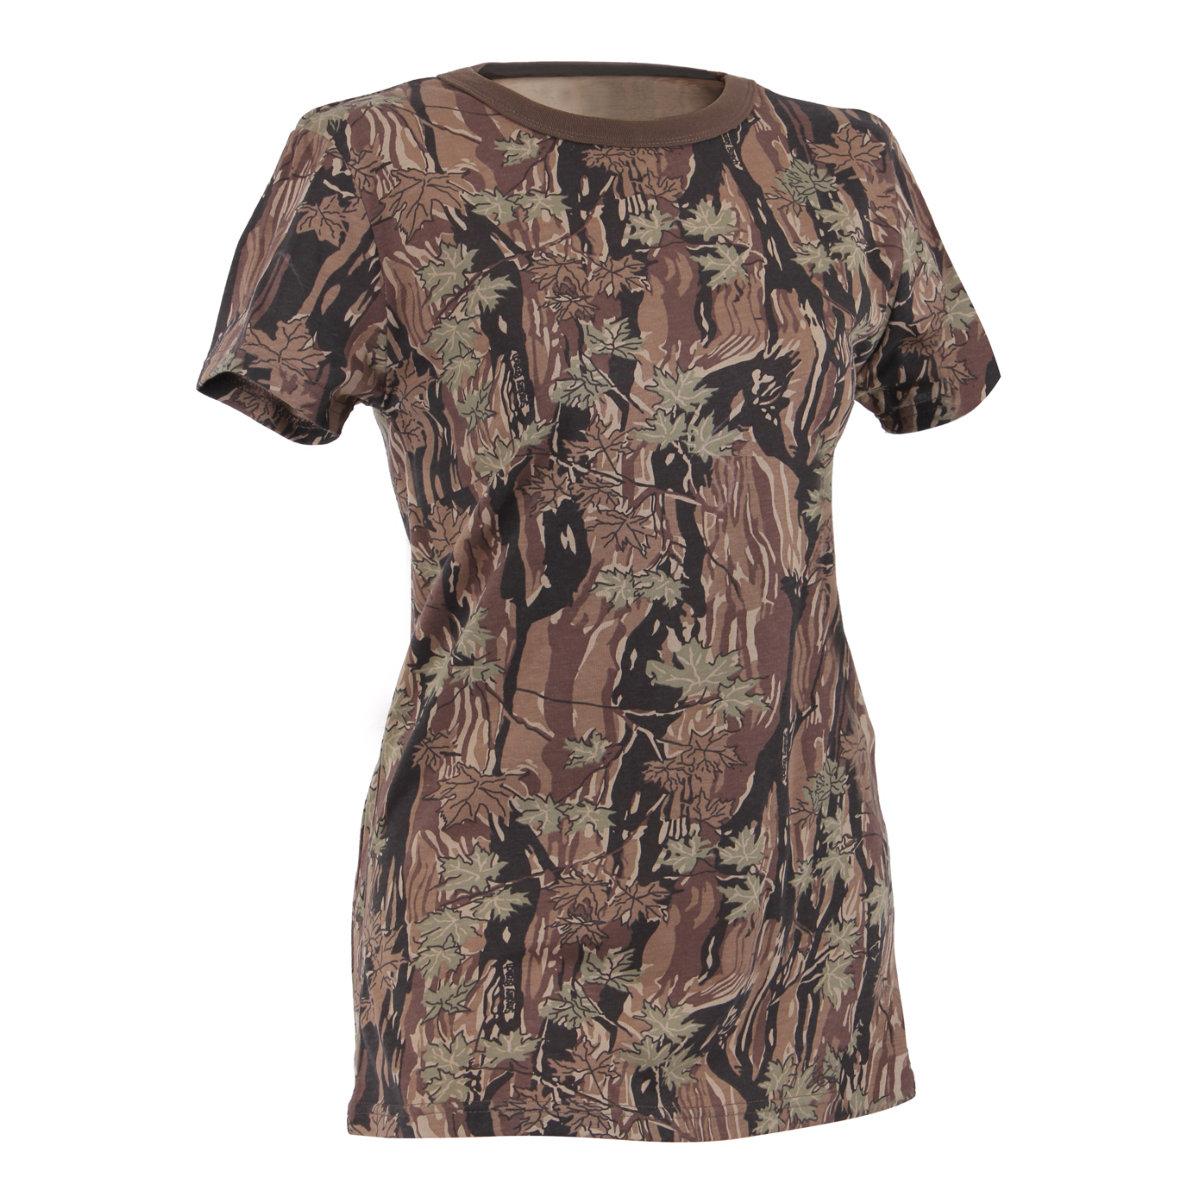 Womens Long Length Camouflage T-Shirt, Smokey Branch Camo - Walmart.com